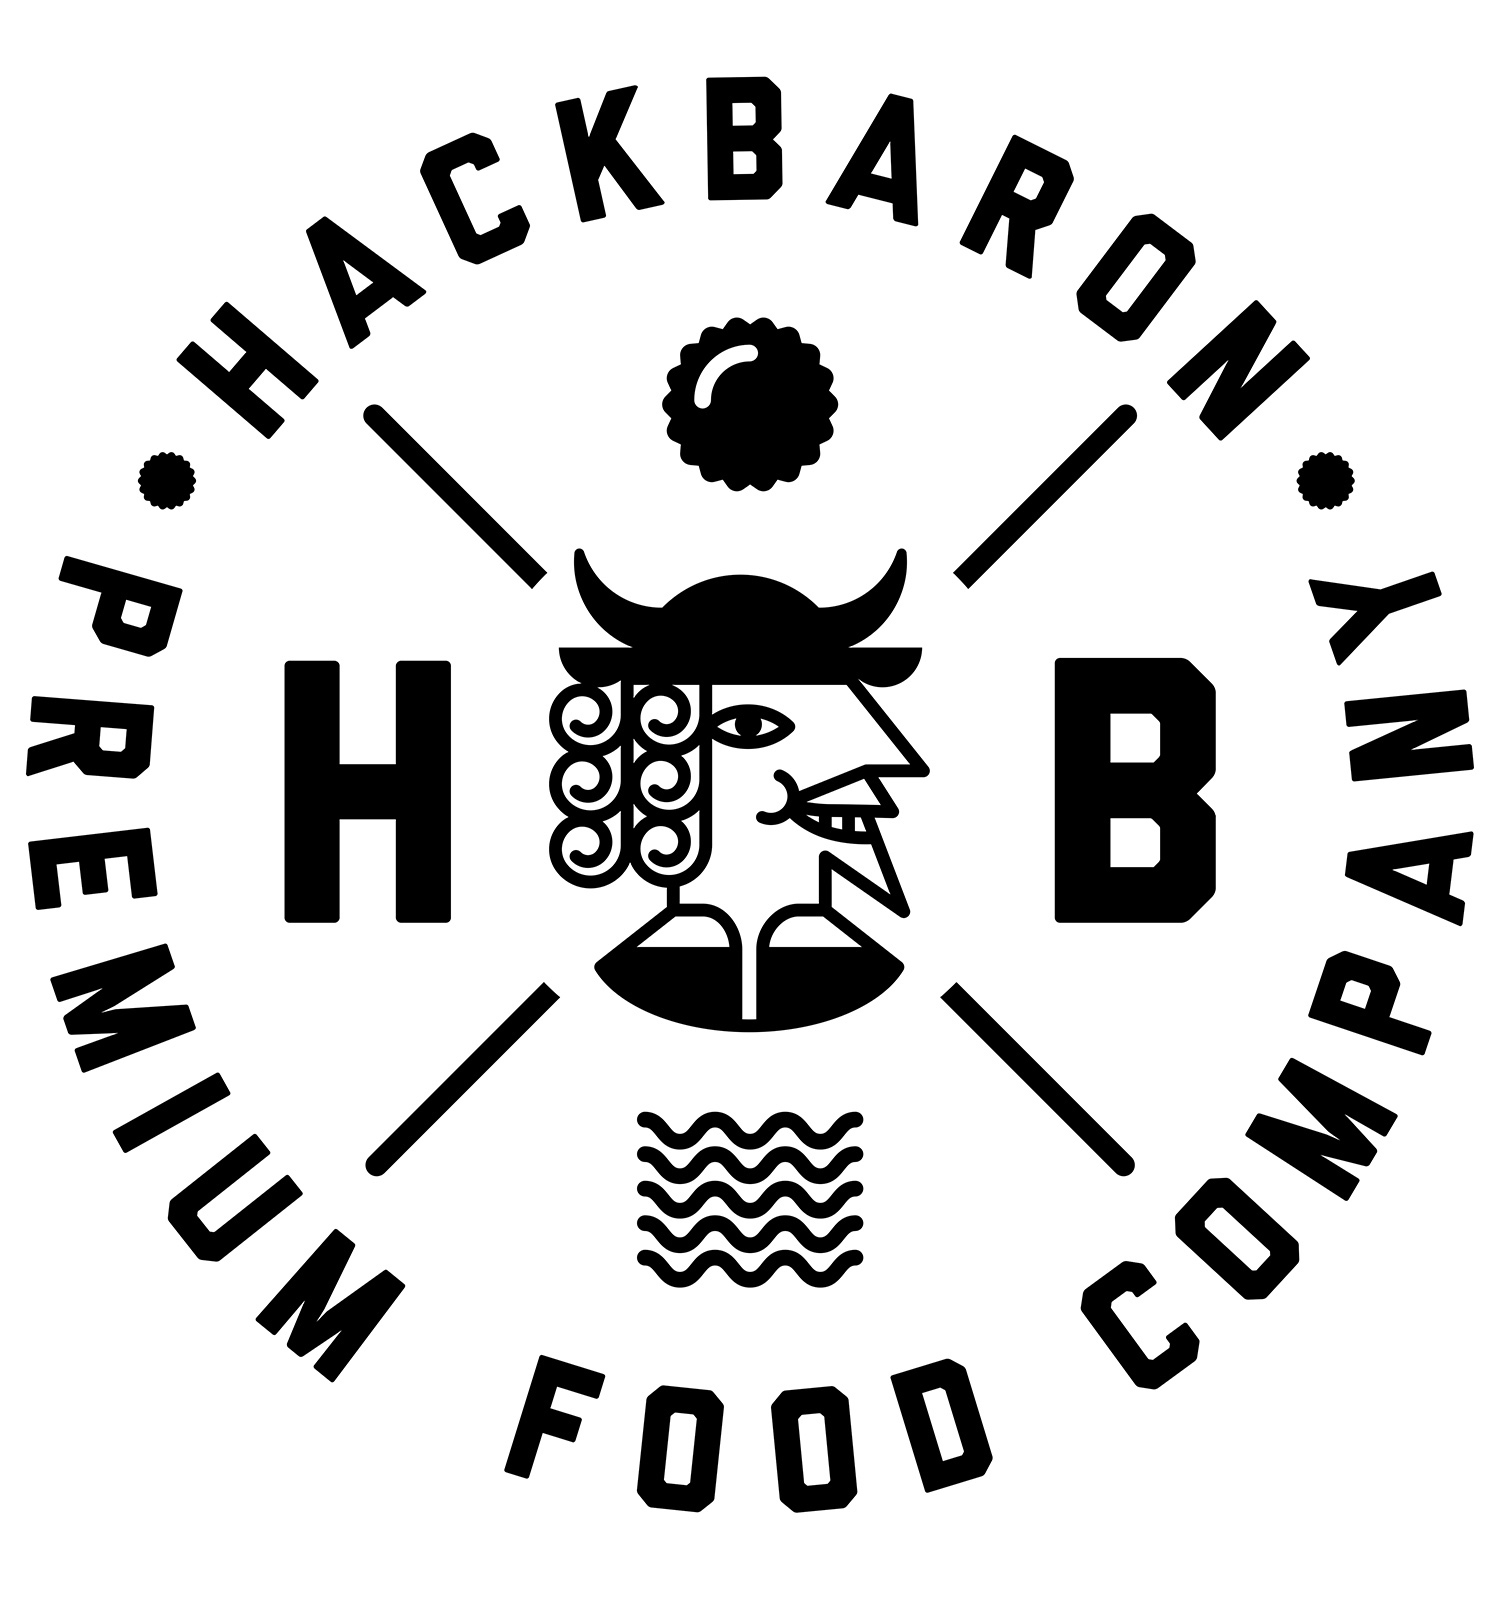 Hackbaron. Premium Food Company. 4